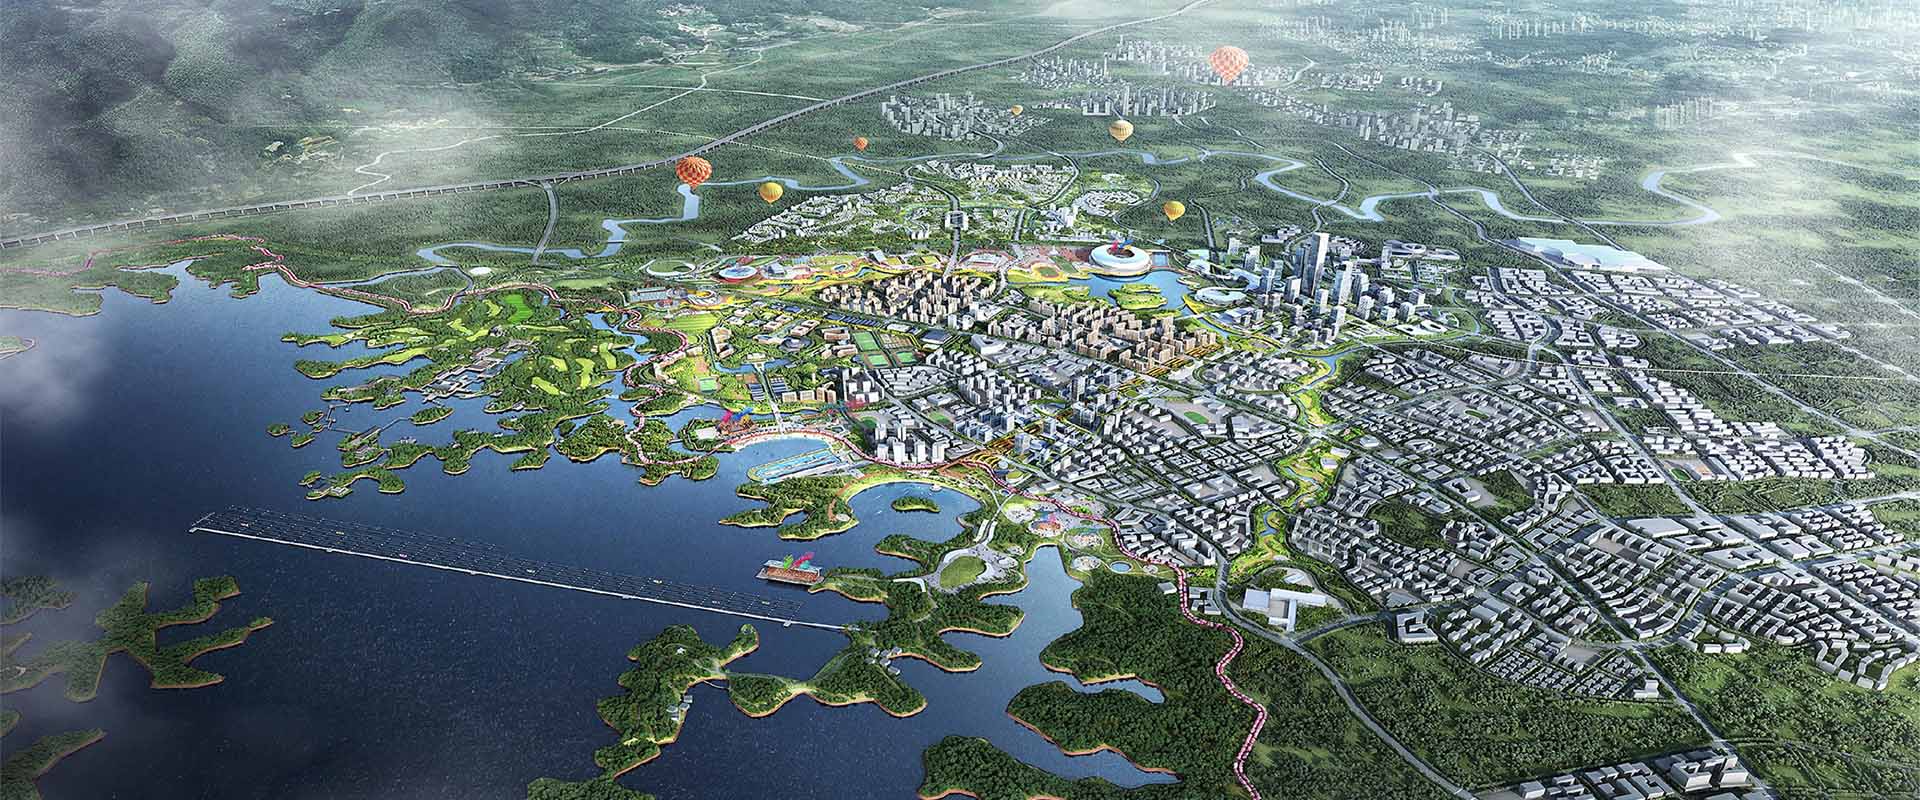 成都东部新区水系水景观专项规划